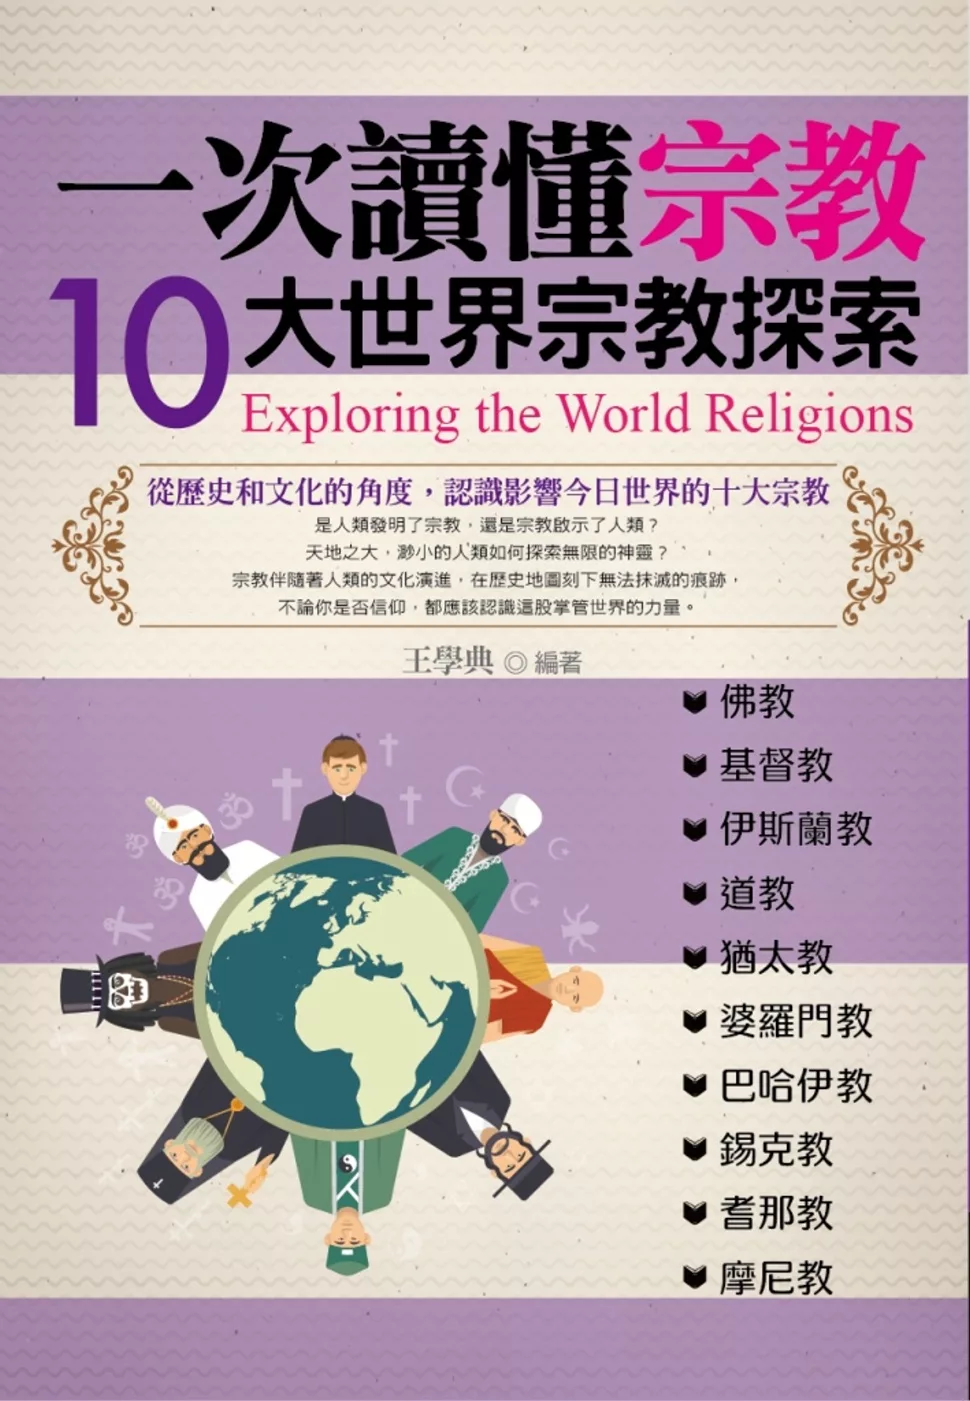 一次讀懂宗教：10大世界宗教探索